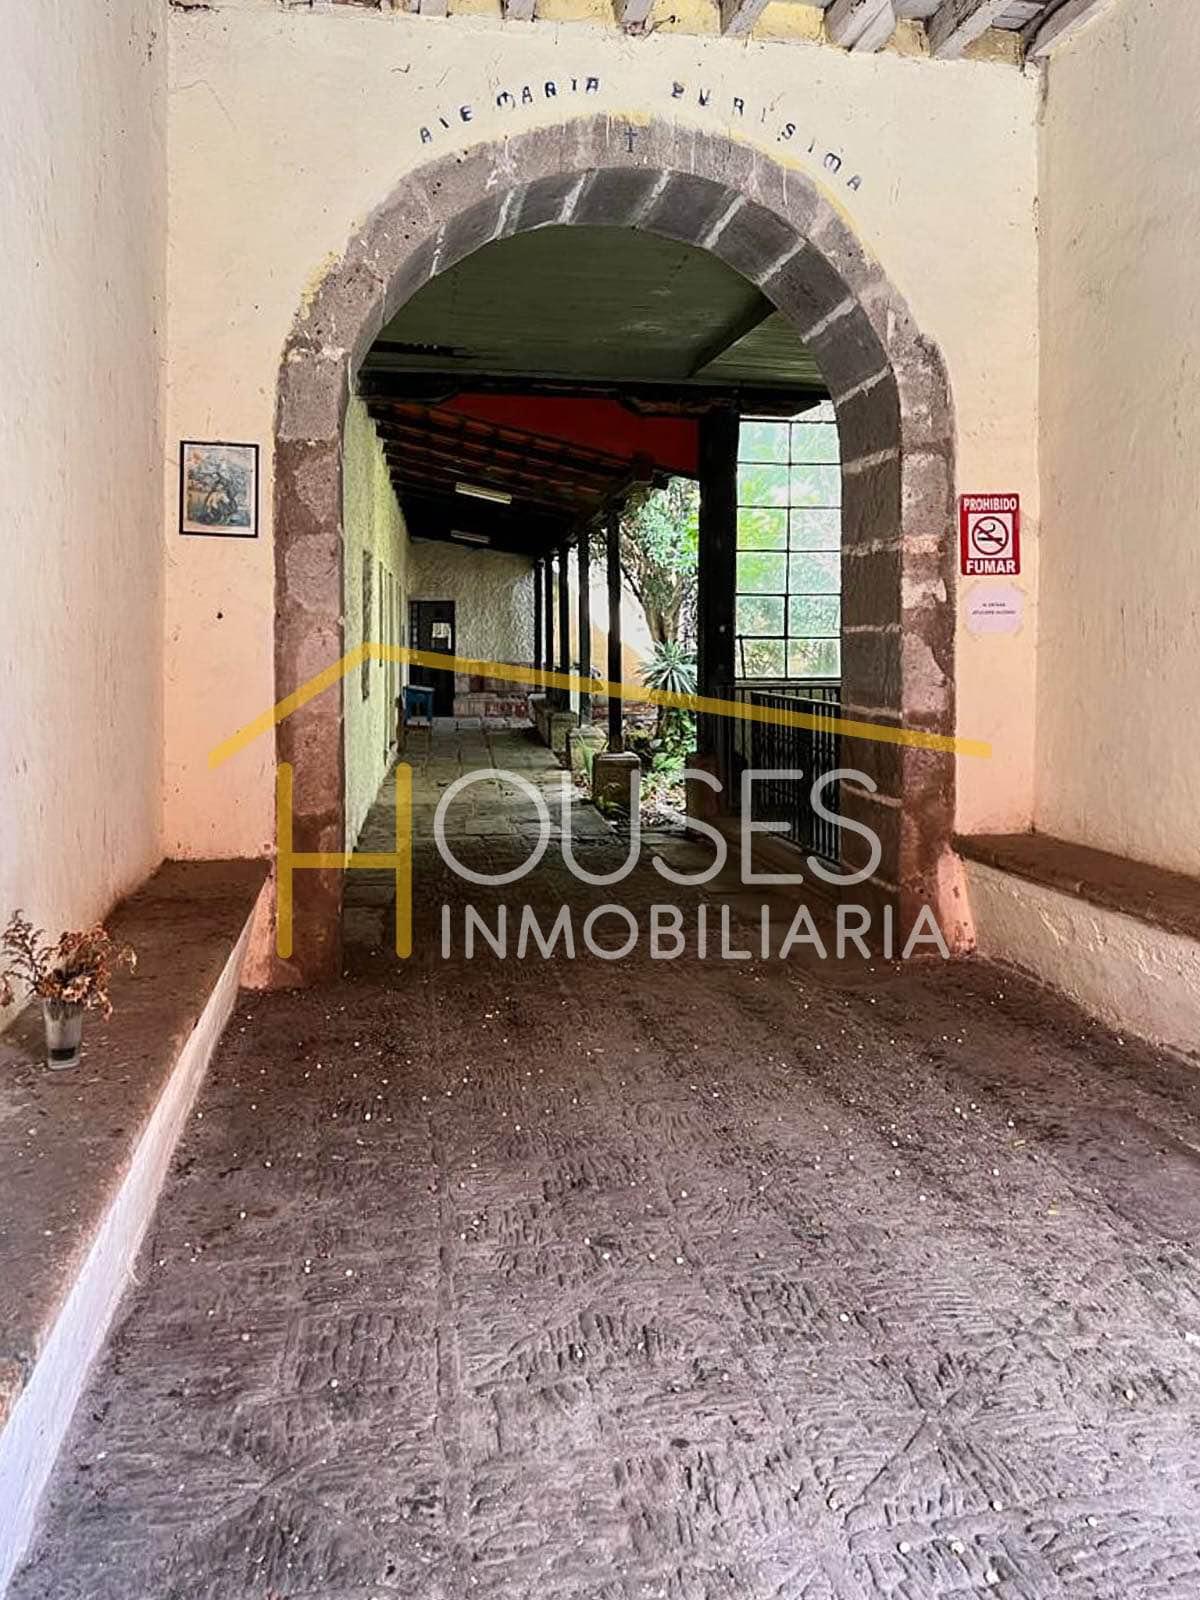 Vendo Casa para Remodelar en Antigua Guatemala

Área de terreno: 344.5 mts2
Área